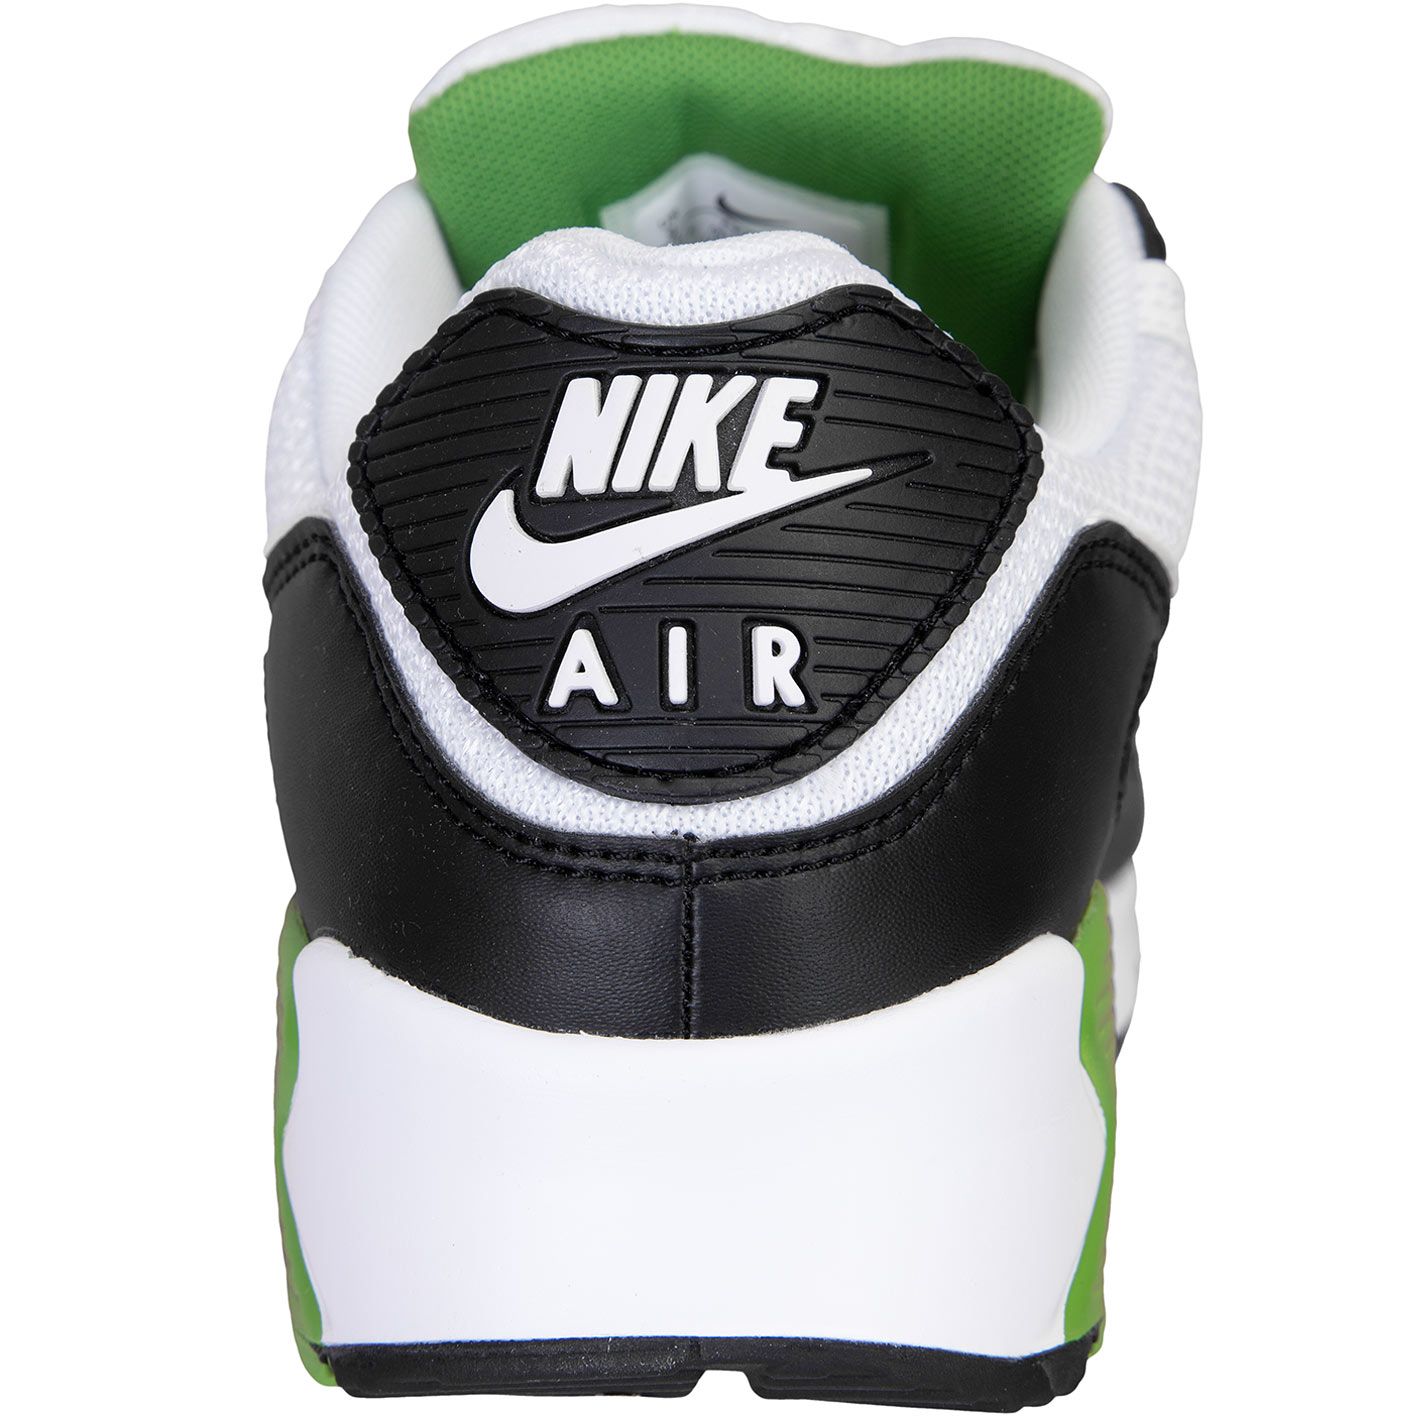 Dat Lastig hulp in de huishouding ☆ Nike Air Max 90 Sneaker weiß/grün - hier bestellen!